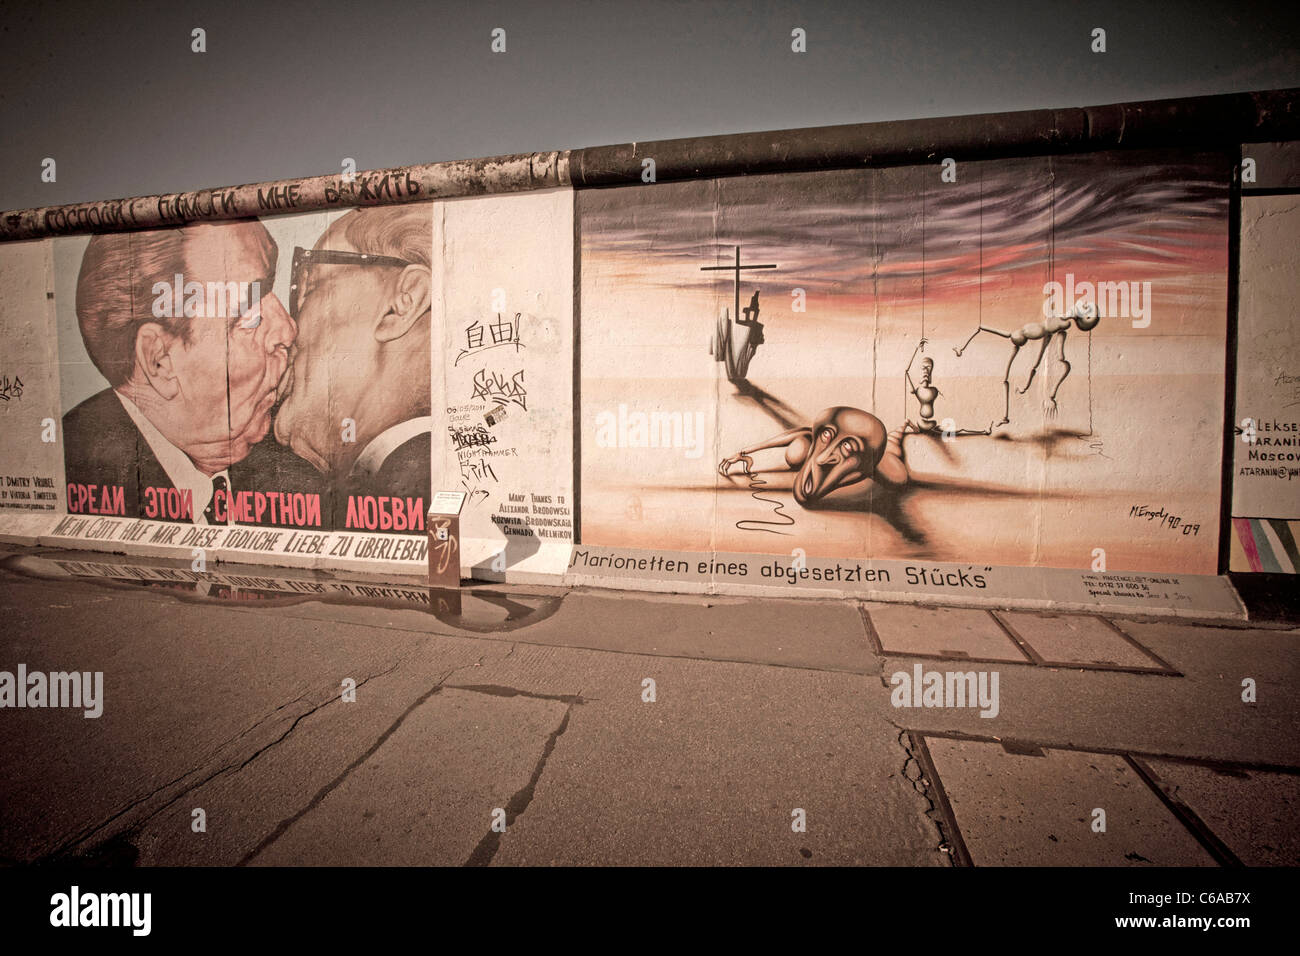 Mur repeint en peinture à East Side Gallery, Berlin wall, Mauer, le baiser, Berlin, Allemagne Banque D'Images